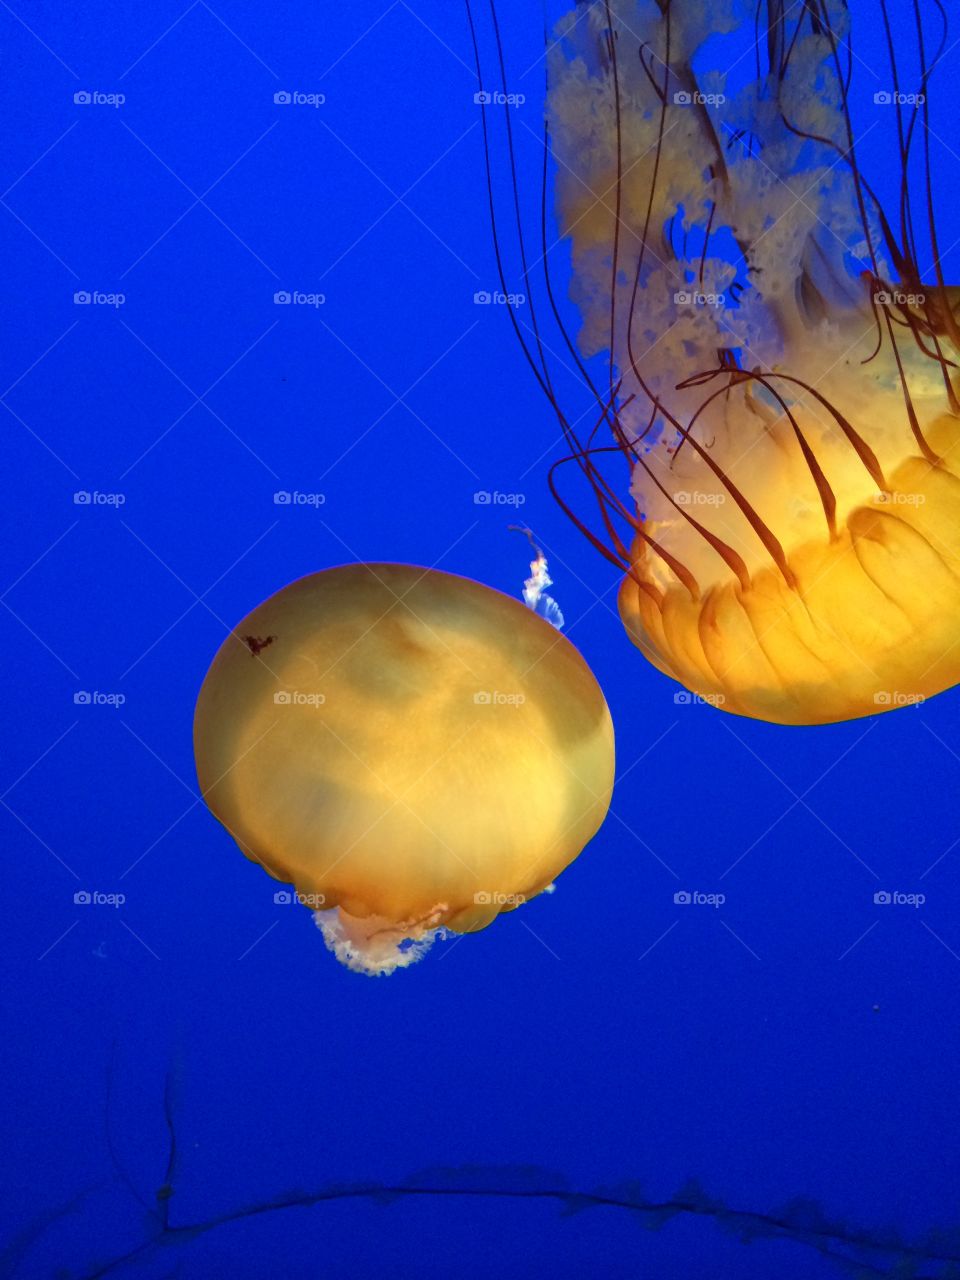 Jellyfish at Aquarium